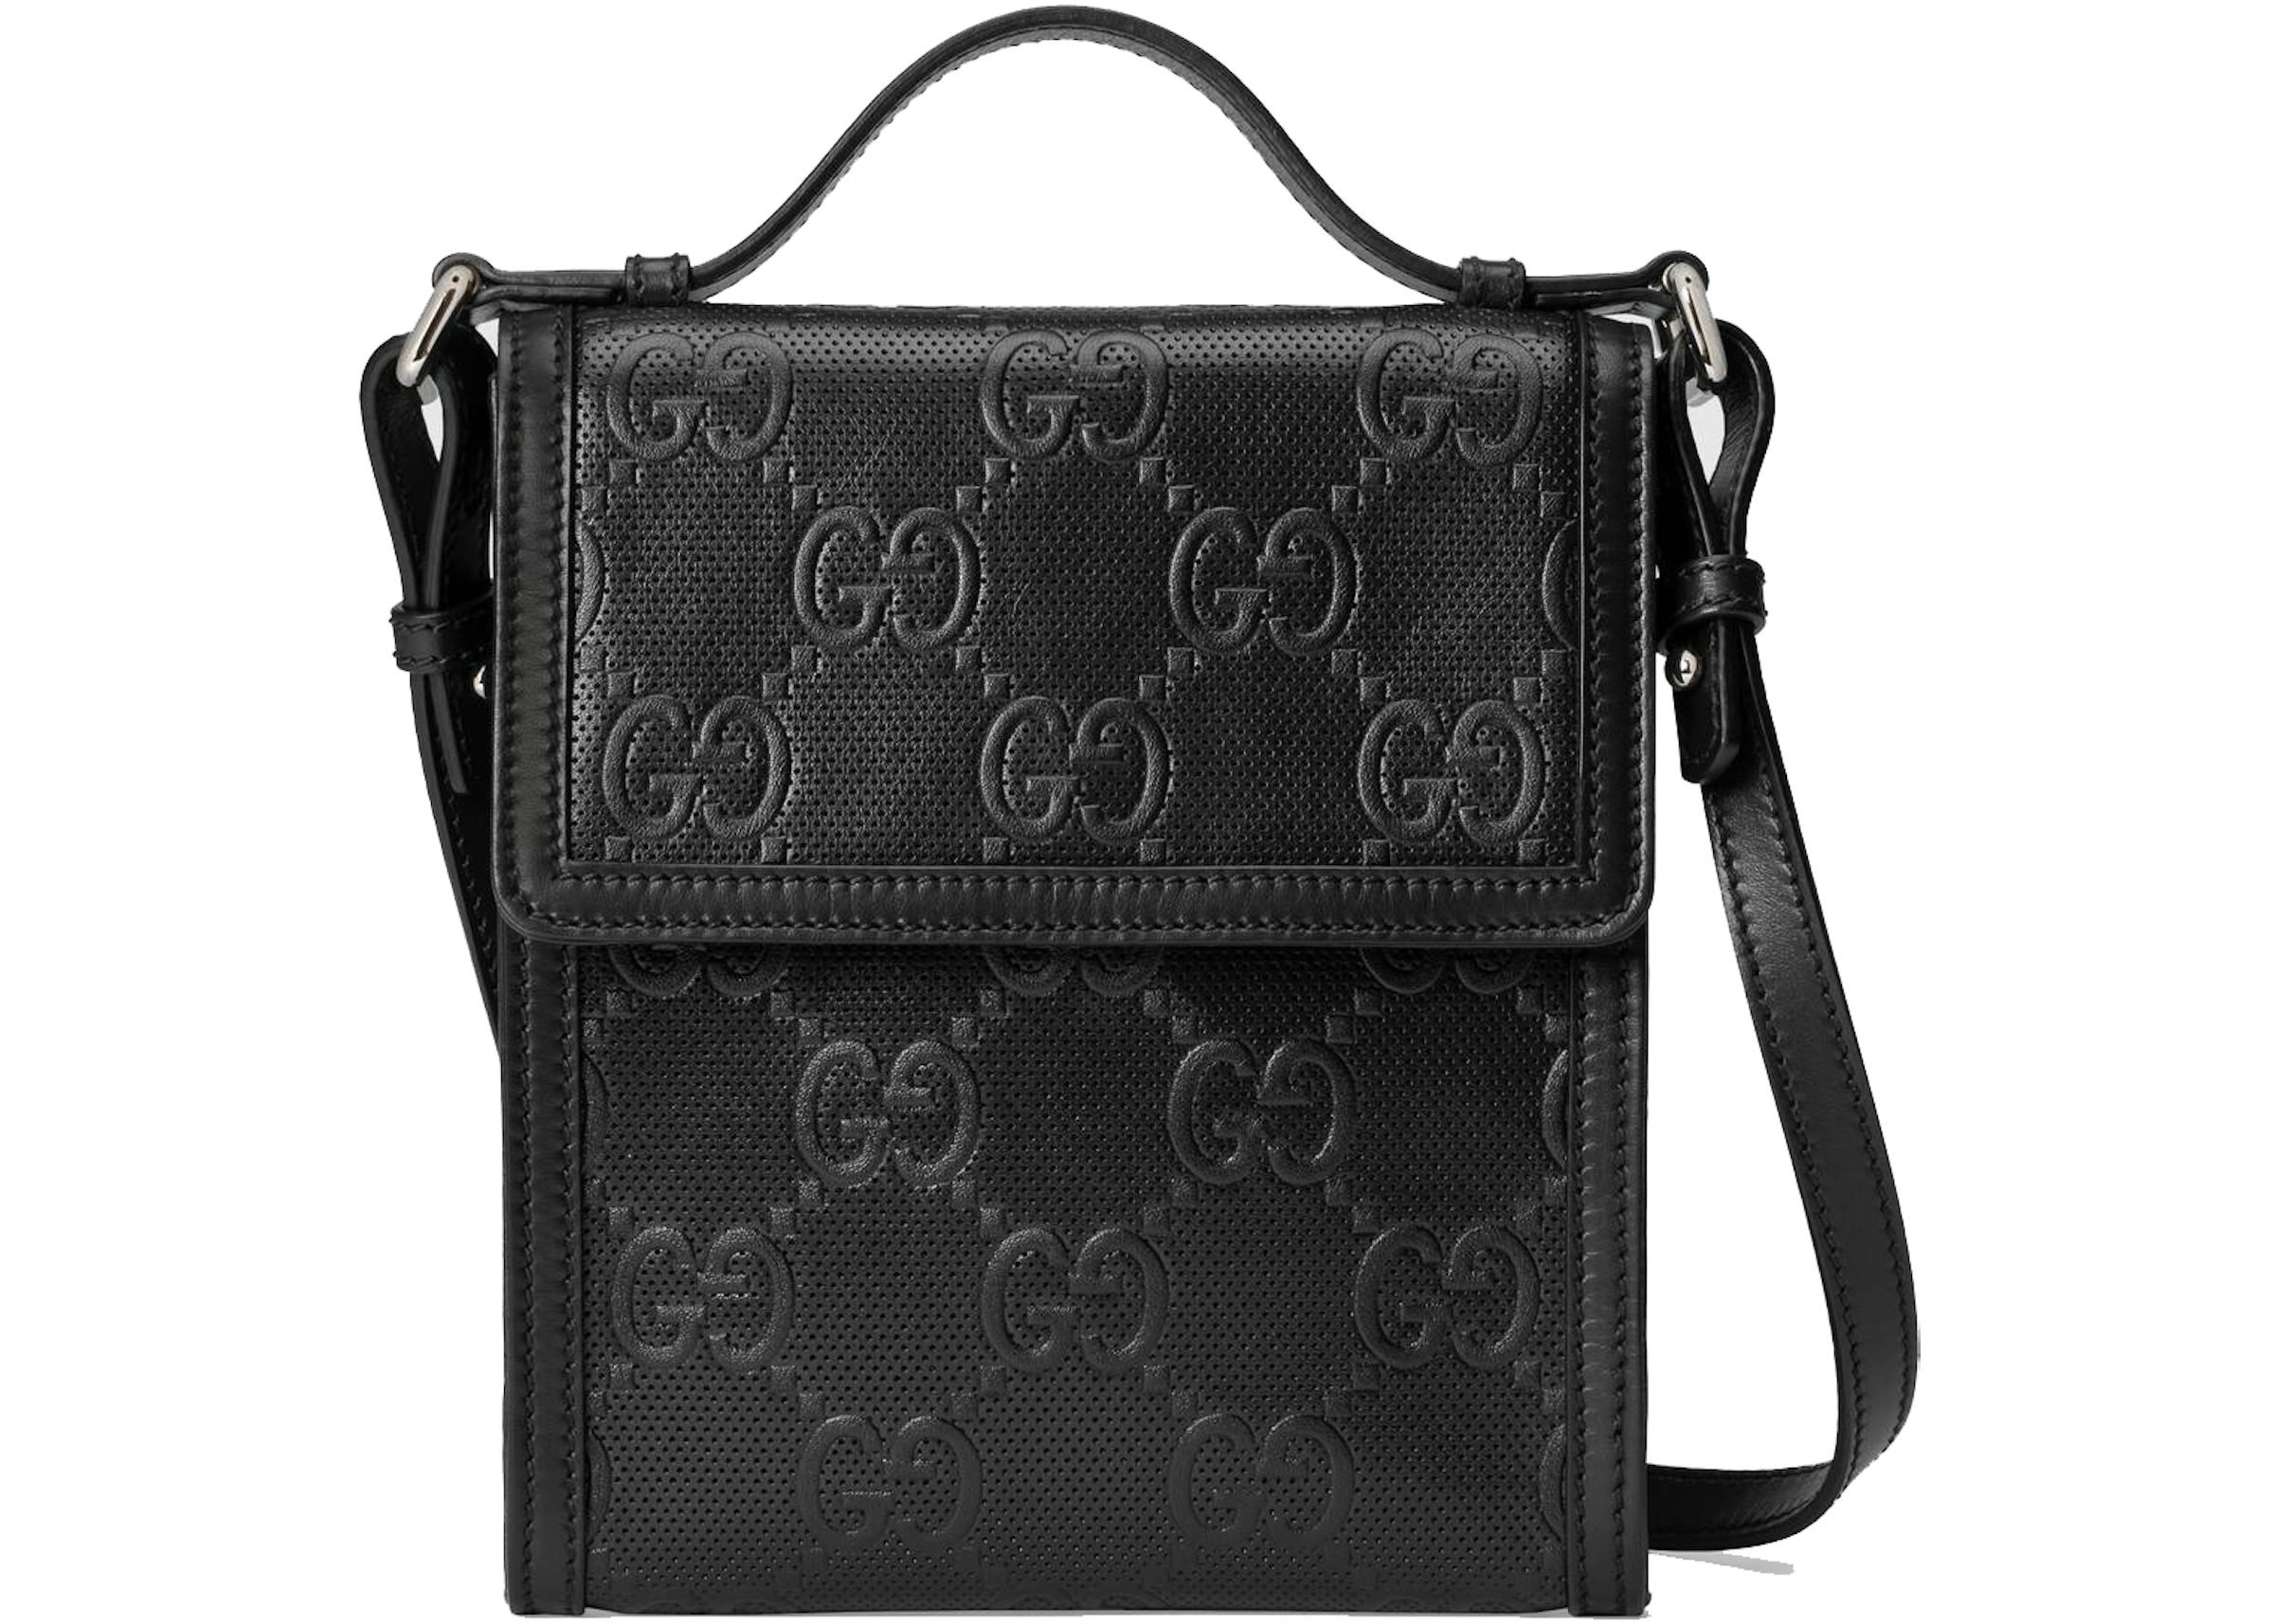 Gucci GG Embossed Messenger Bag Black